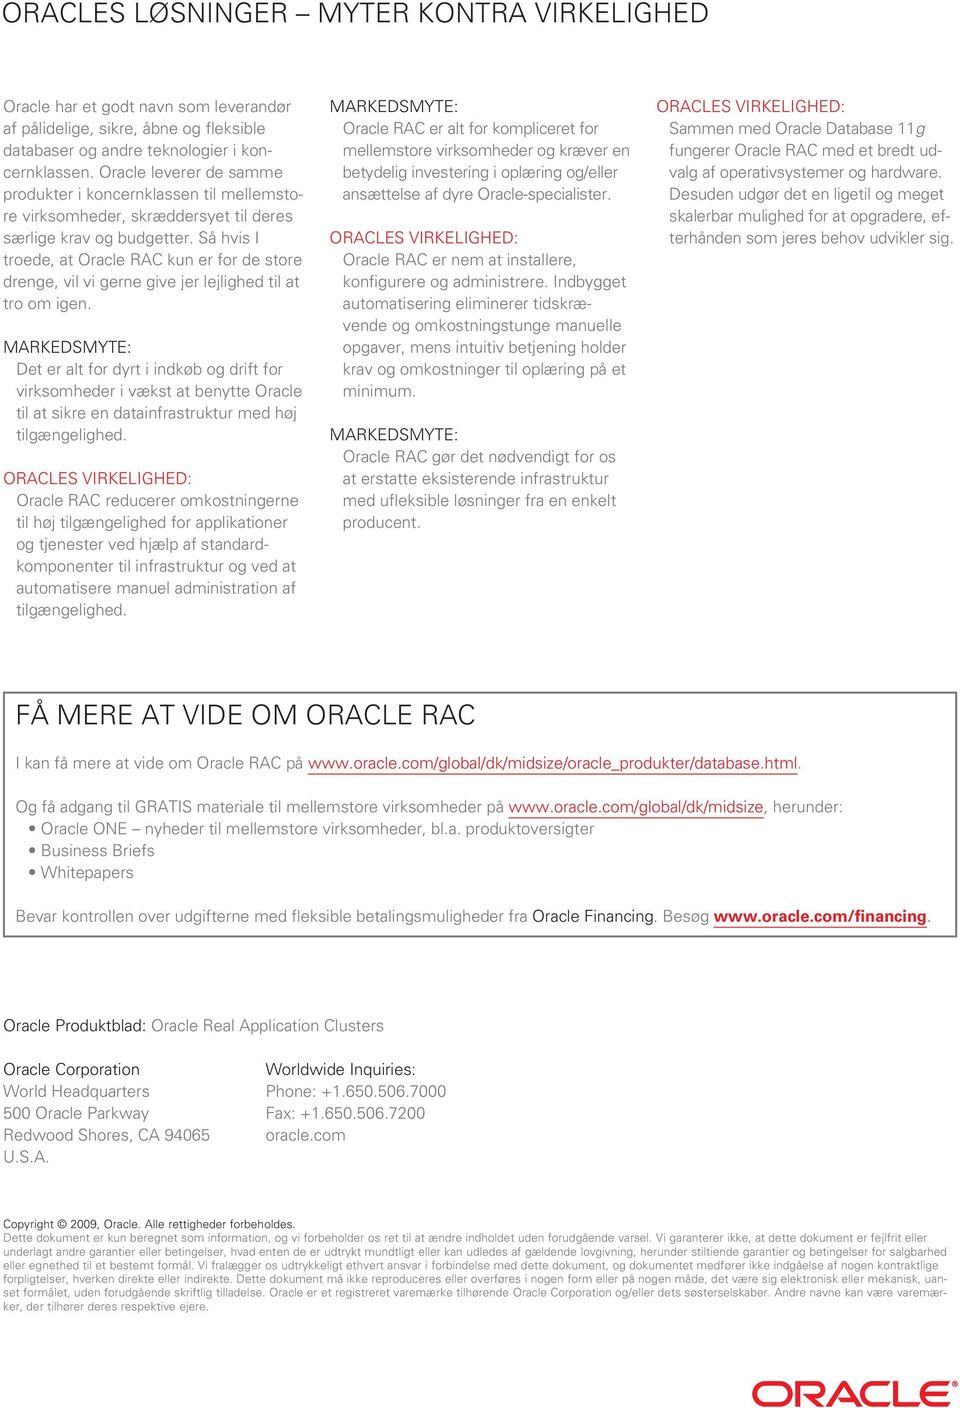 Så hvis I troede, at Oracle RAC kun er for de store drenge, vil vi gerne give jer lejlighed til at tro om igen.